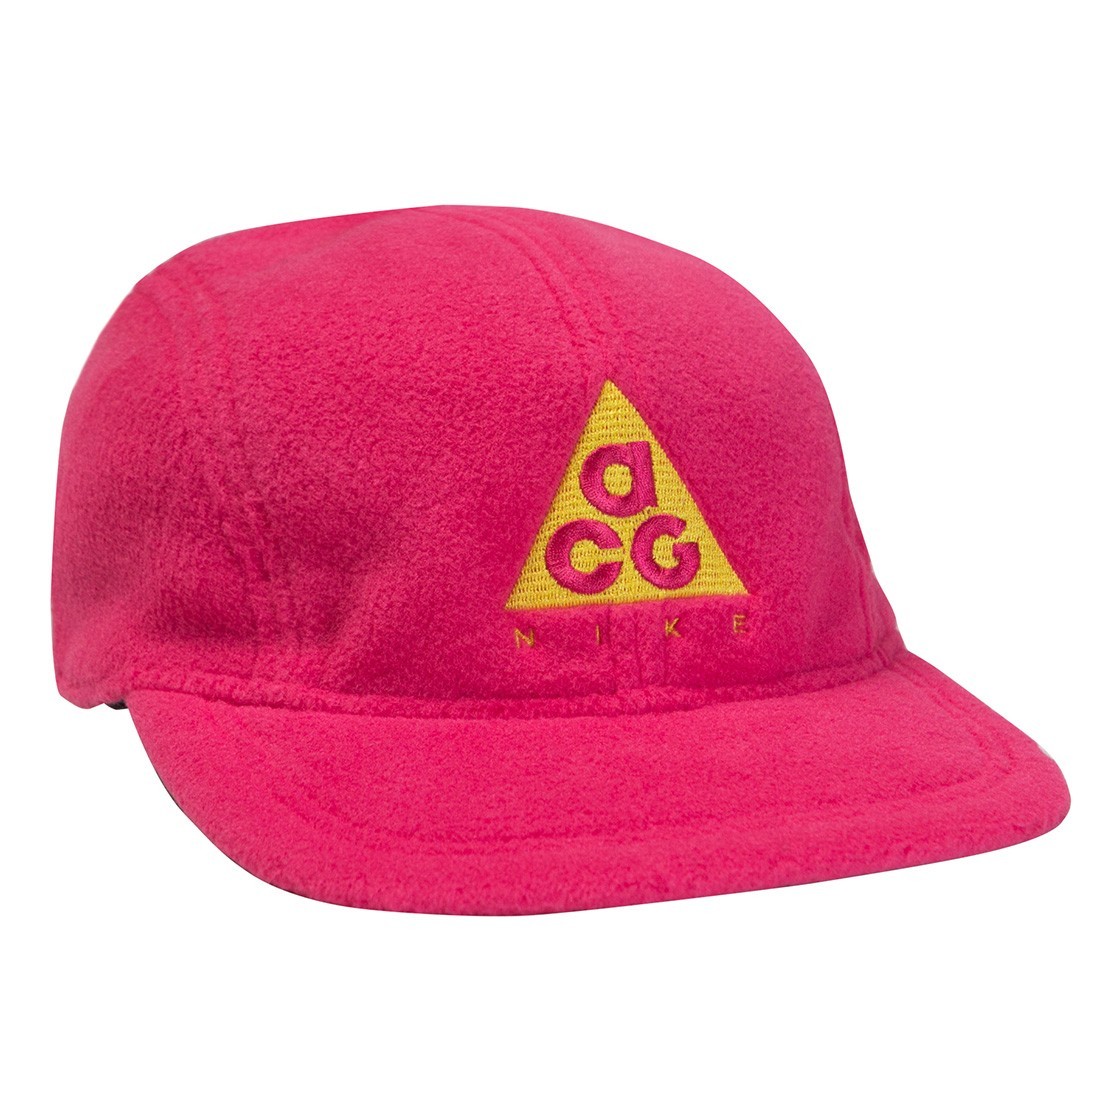 acg fleece cap